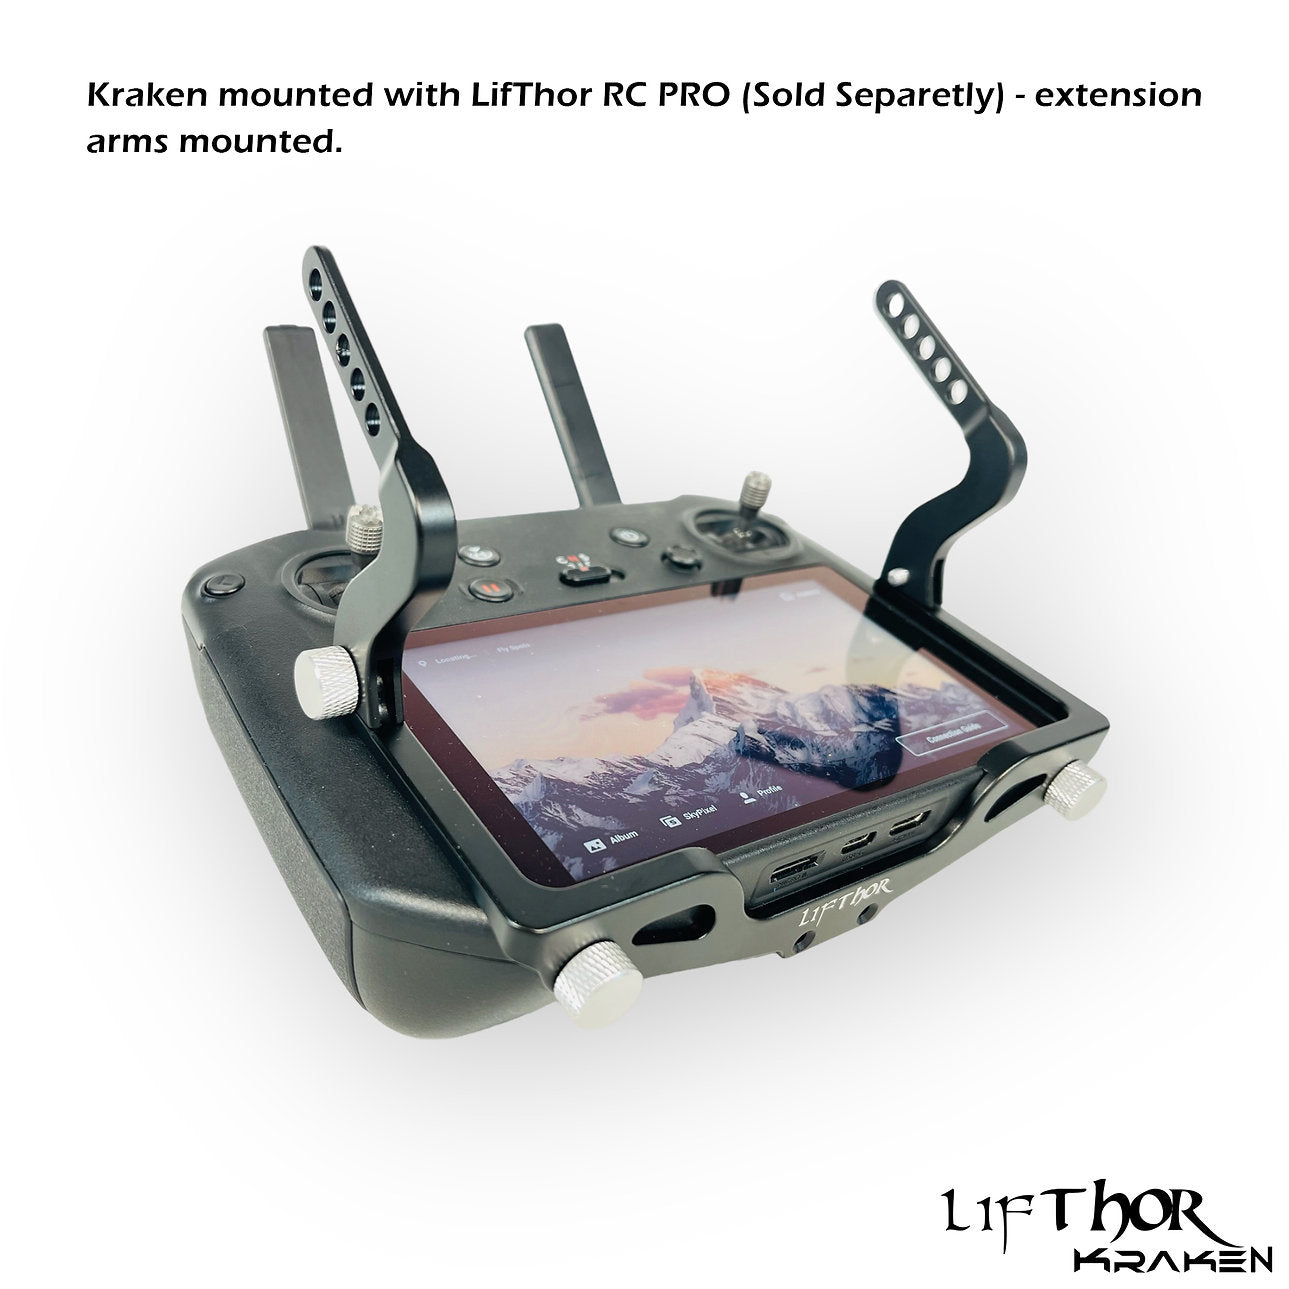 LifThor Kraken Lanyard System Upgrade for DJI RC Pro